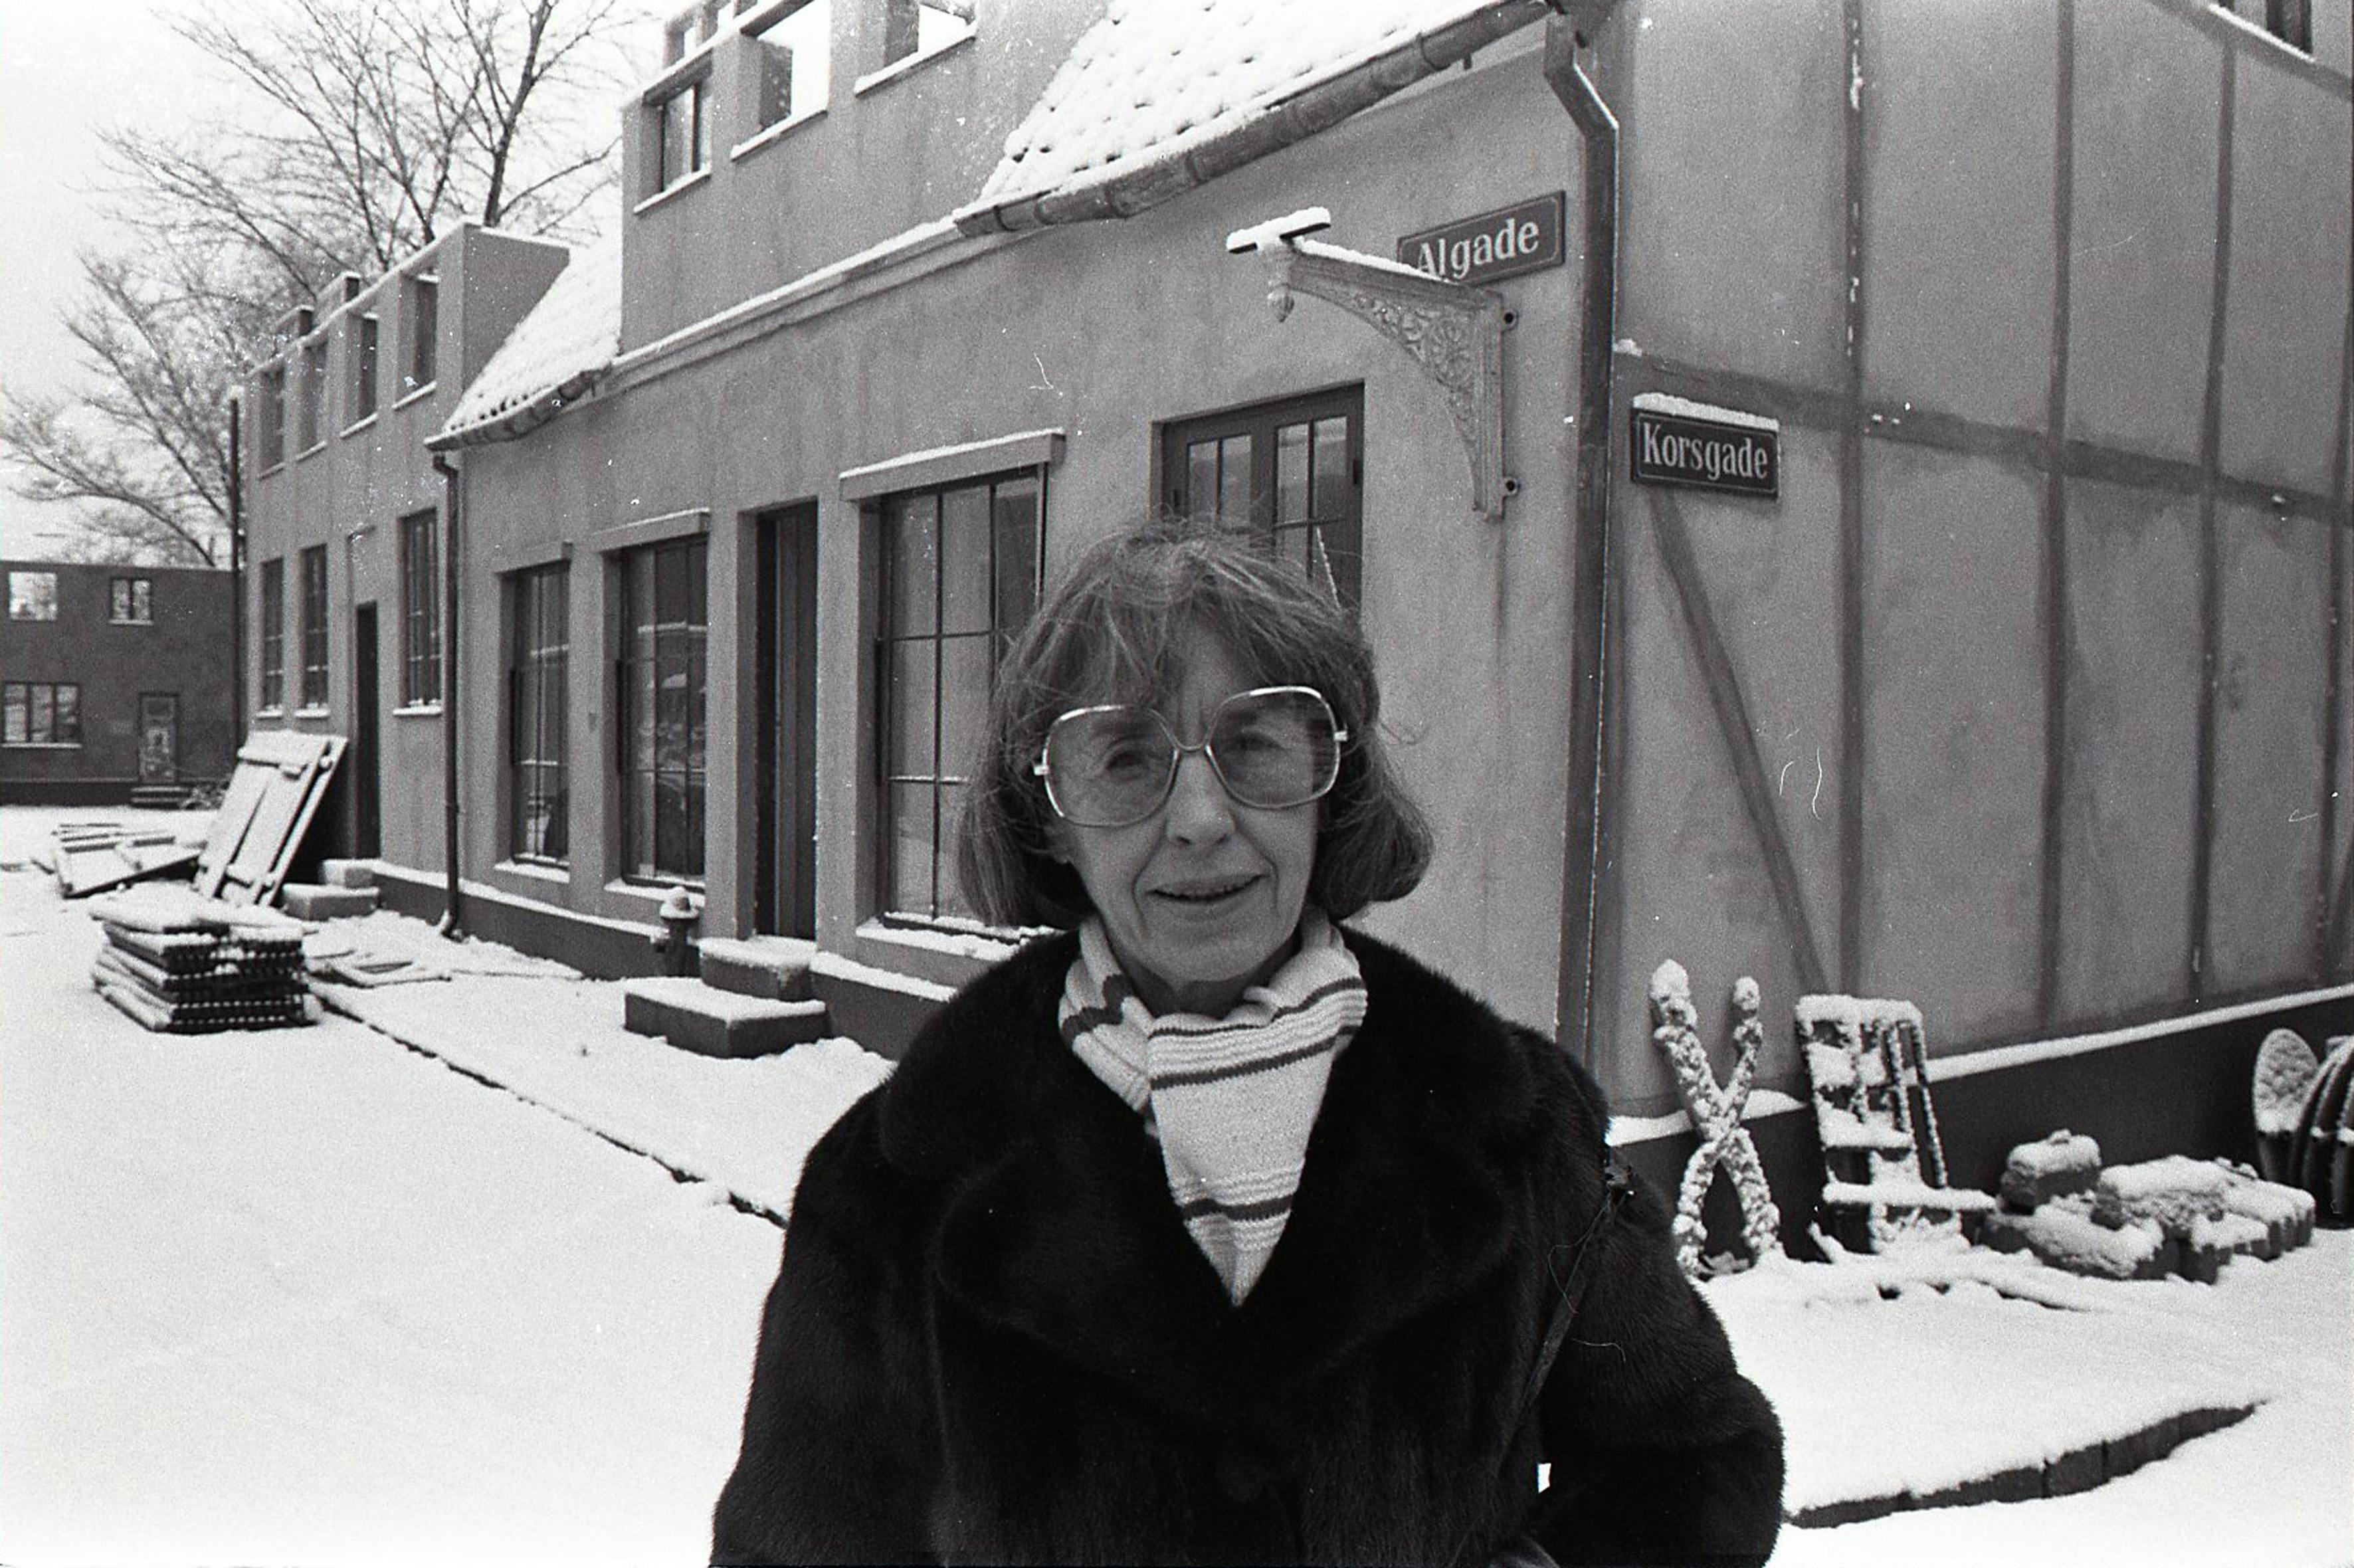 Lise Nørgaard fotograferet i 1978 foran Nordisk Films studier i Valby,&nbsp;hvor optagelserne til tv-serien "Matador" foregår.
